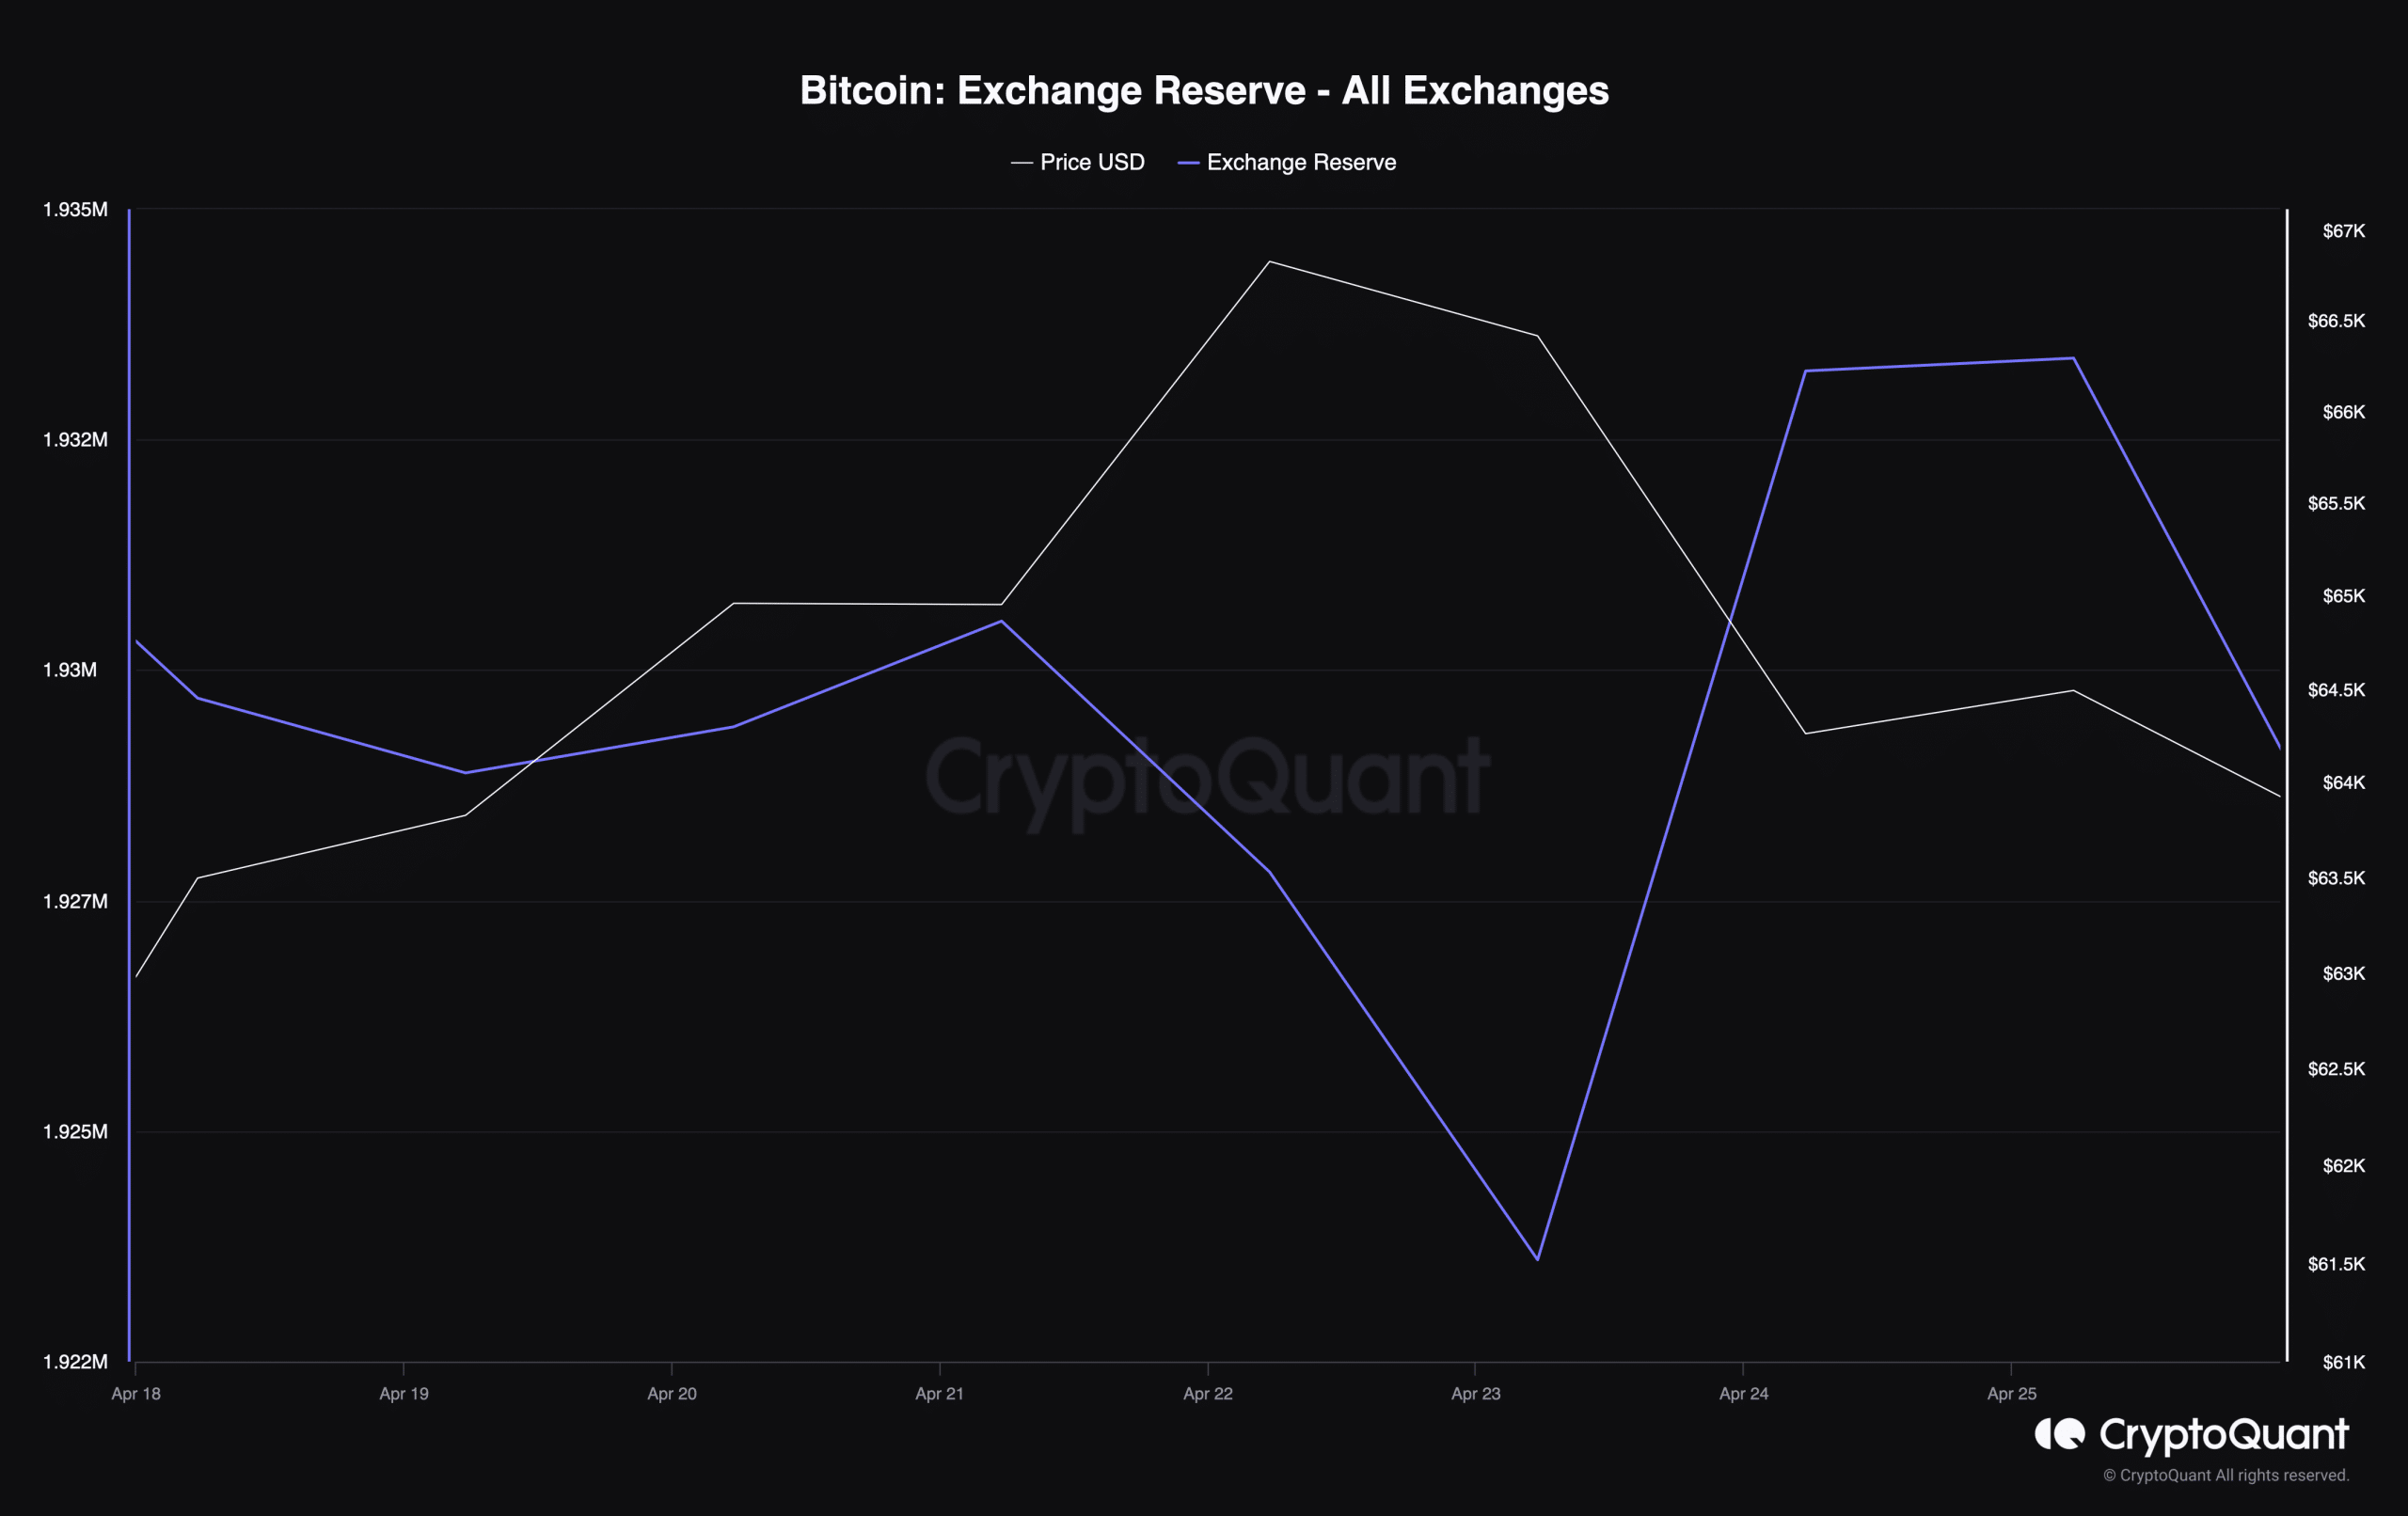 The exchange reserve in BTC has decreased